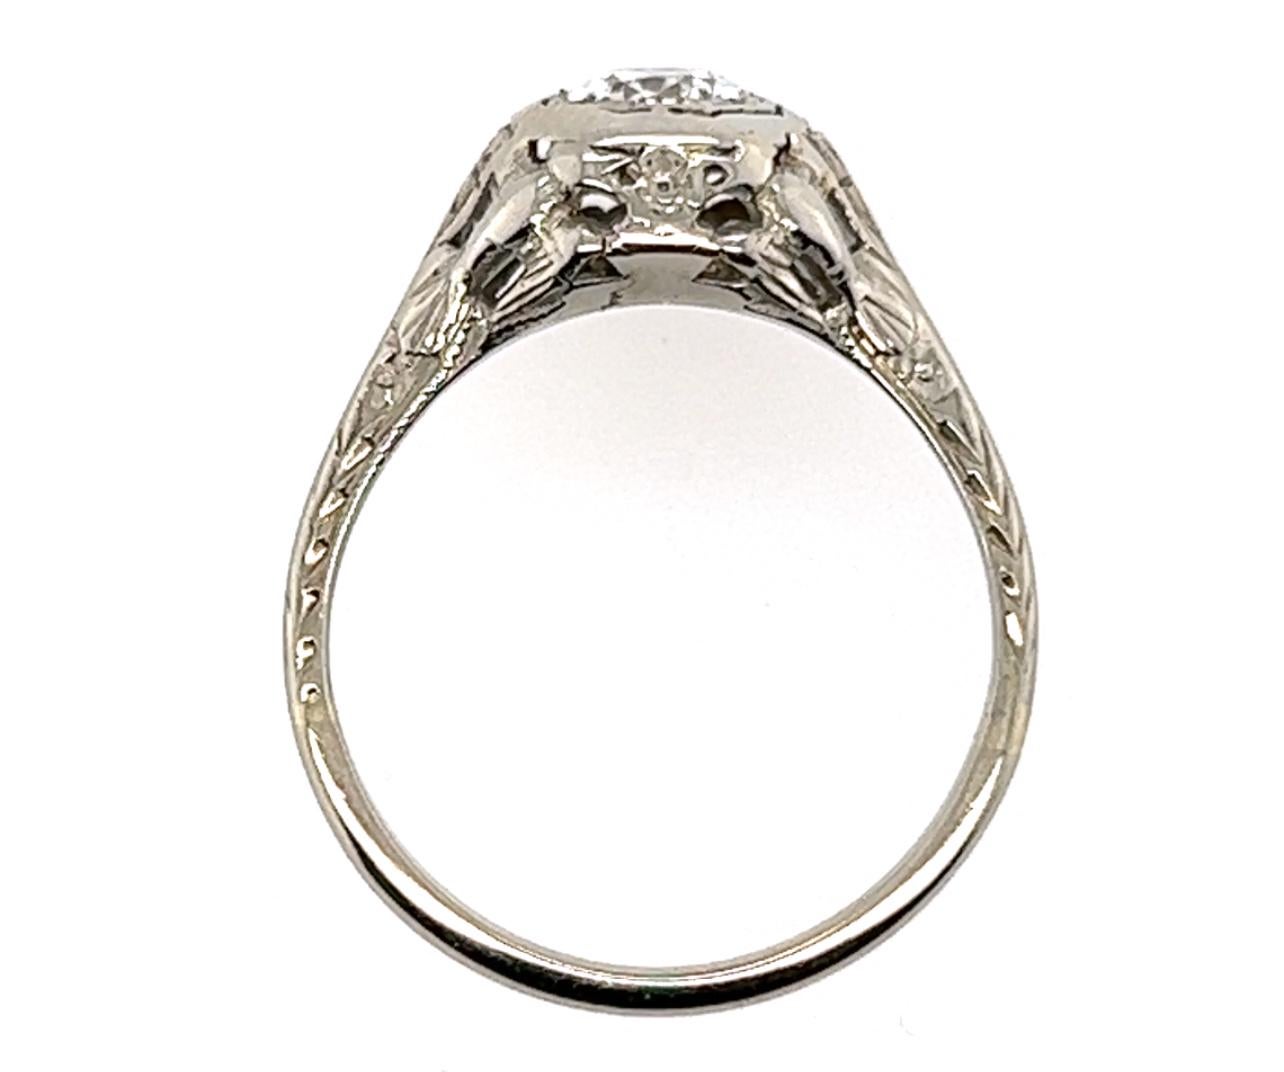 Véritable bague de fiançailles originale Art Déco des années 1930 certifiée GIA avec un diamant de .54ct Lovebird en or blanc 18K



Avec un centre en diamant de haute qualité certifié GIA de 0,54ct H-VS2, véritable diamant naturel de taille